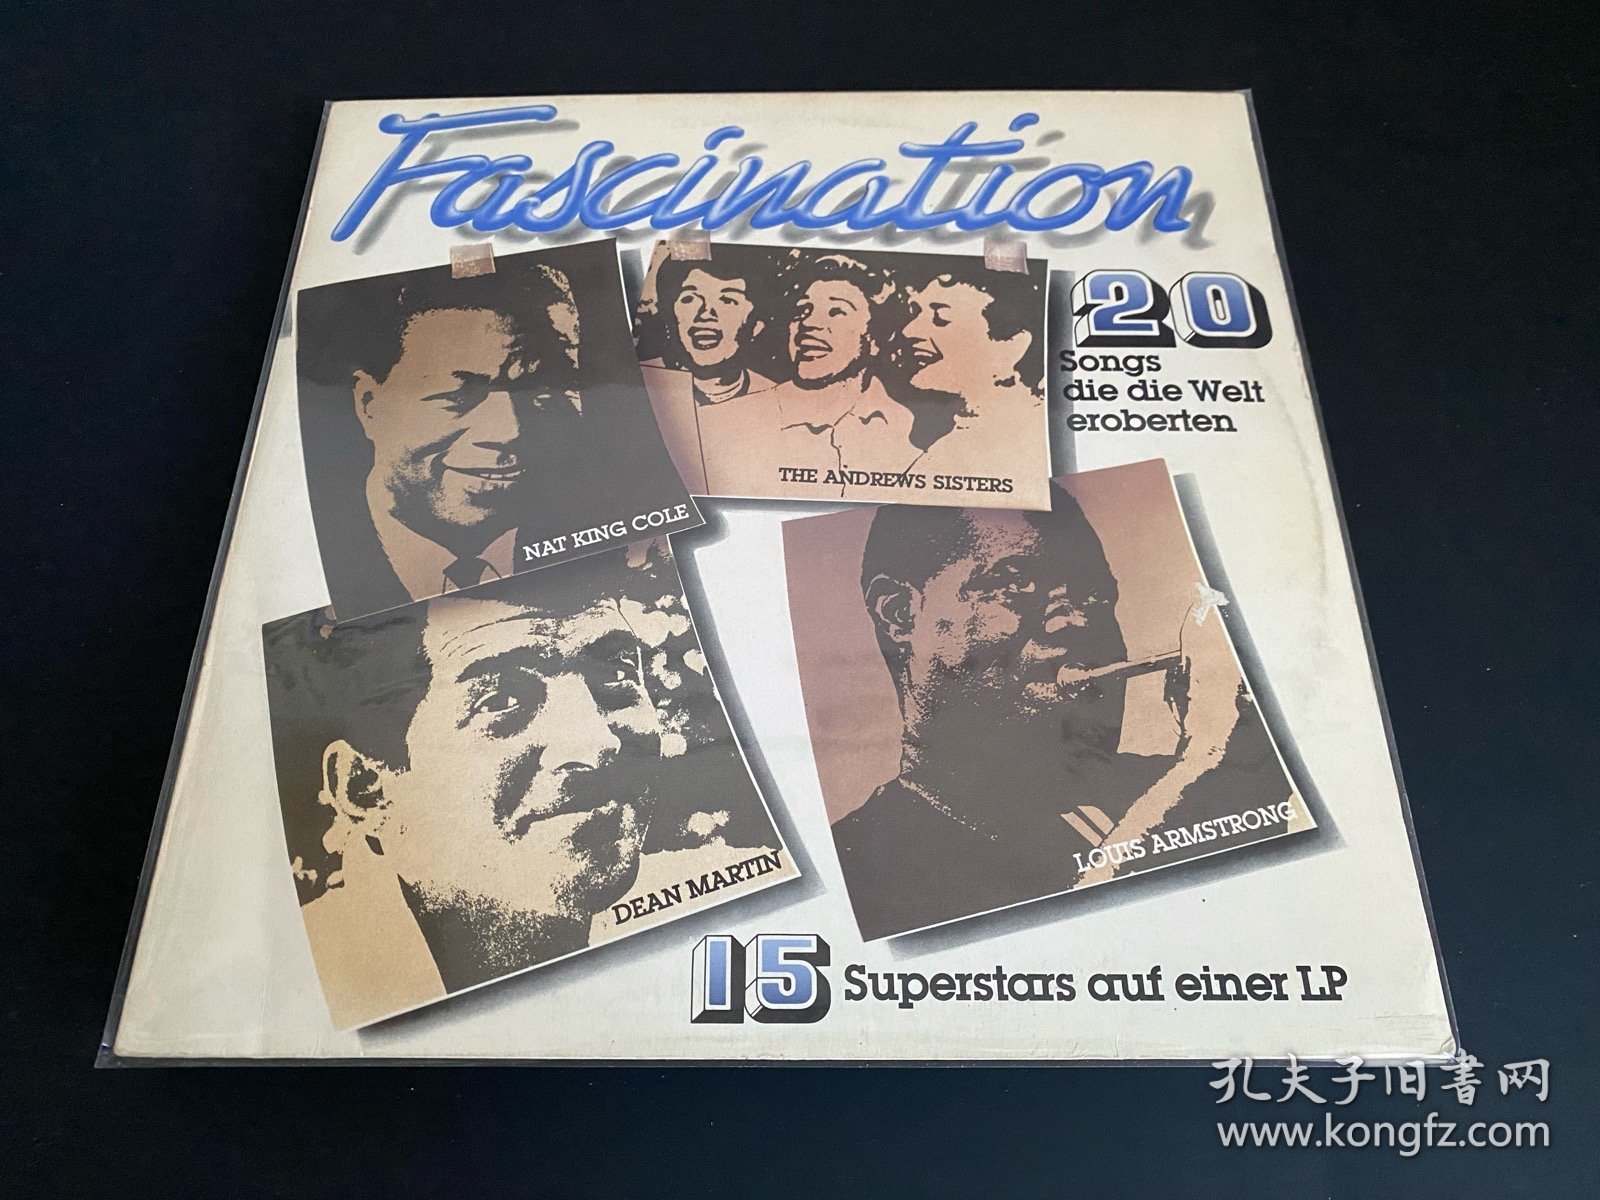 德版 FASCINATION 爵士大牌合辑 无划痕 12寸LP黑胶唱片